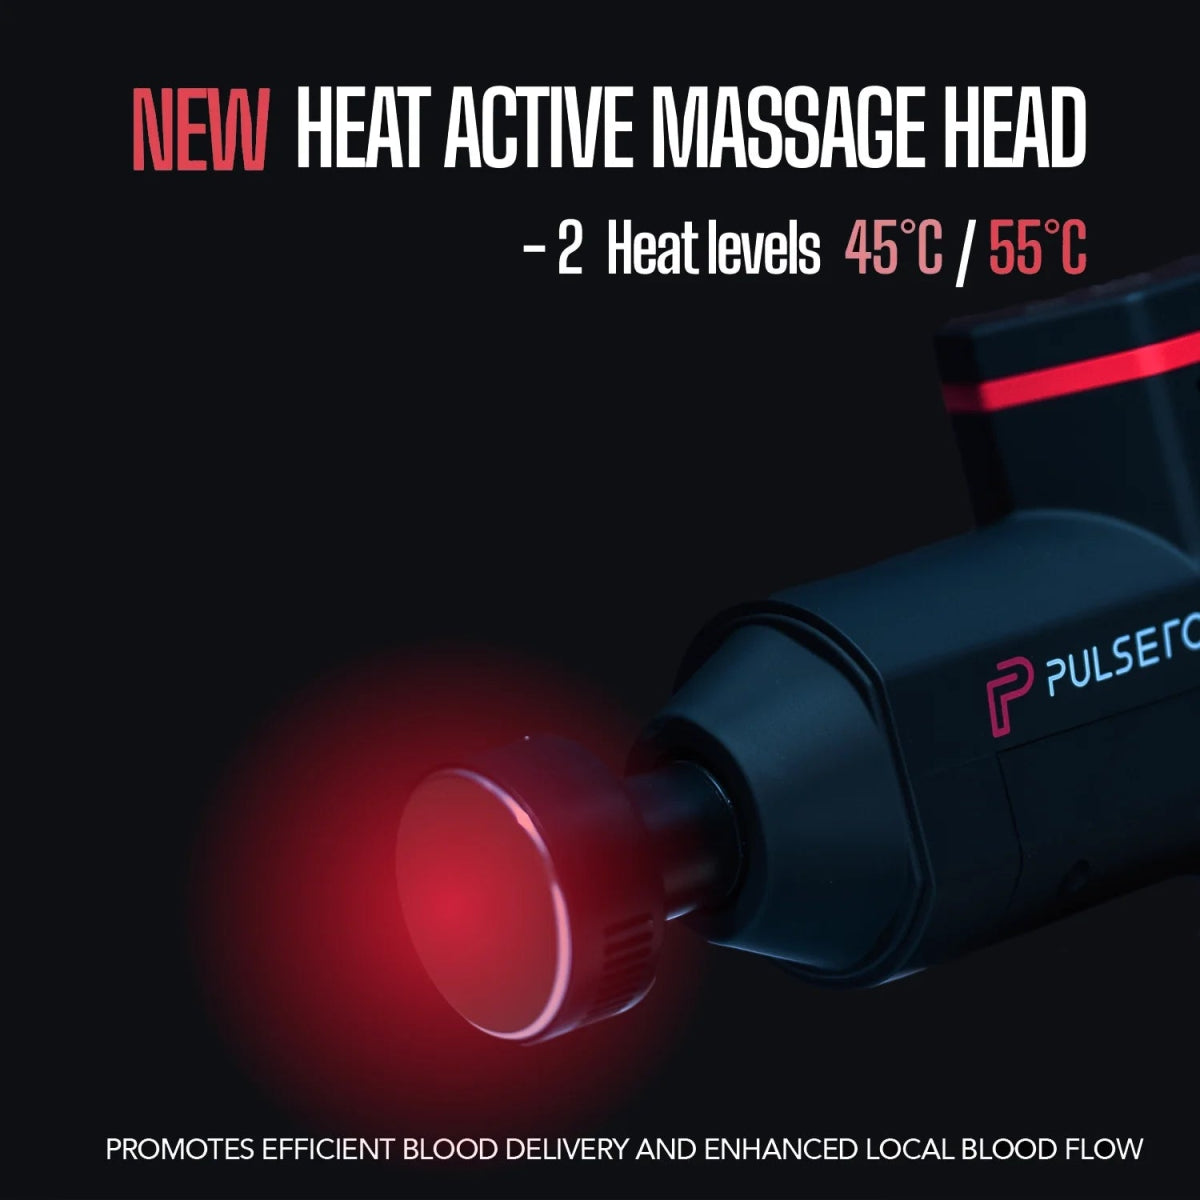 IGNITE Heat (Heated Head) - Pulseroll